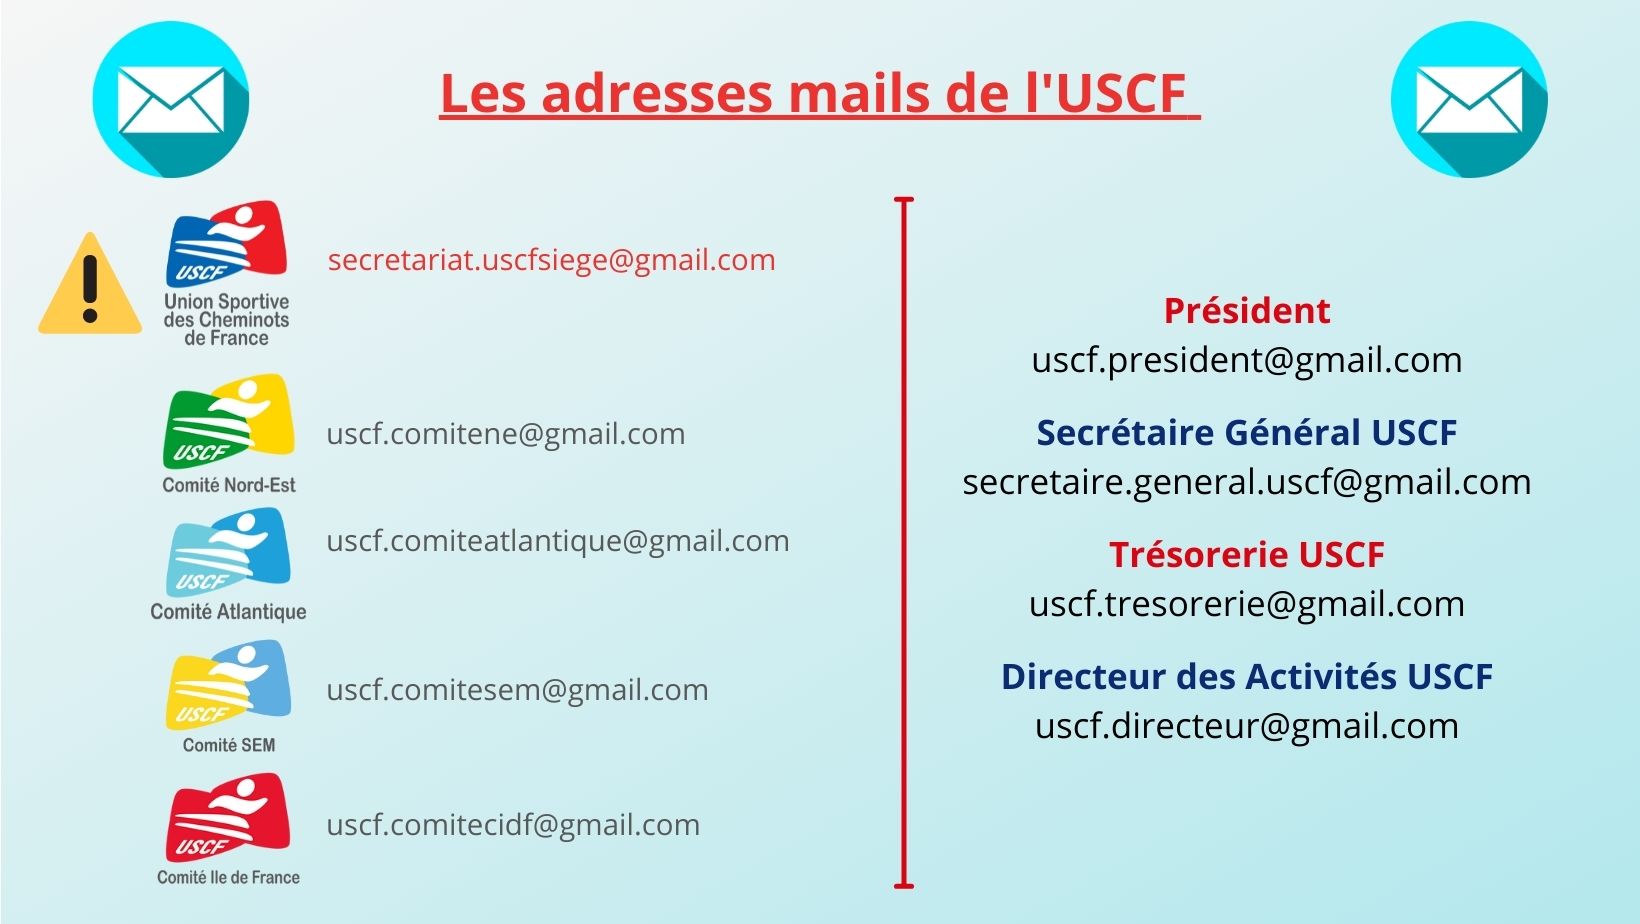 Les nouvelles adresses mails de l’USCF